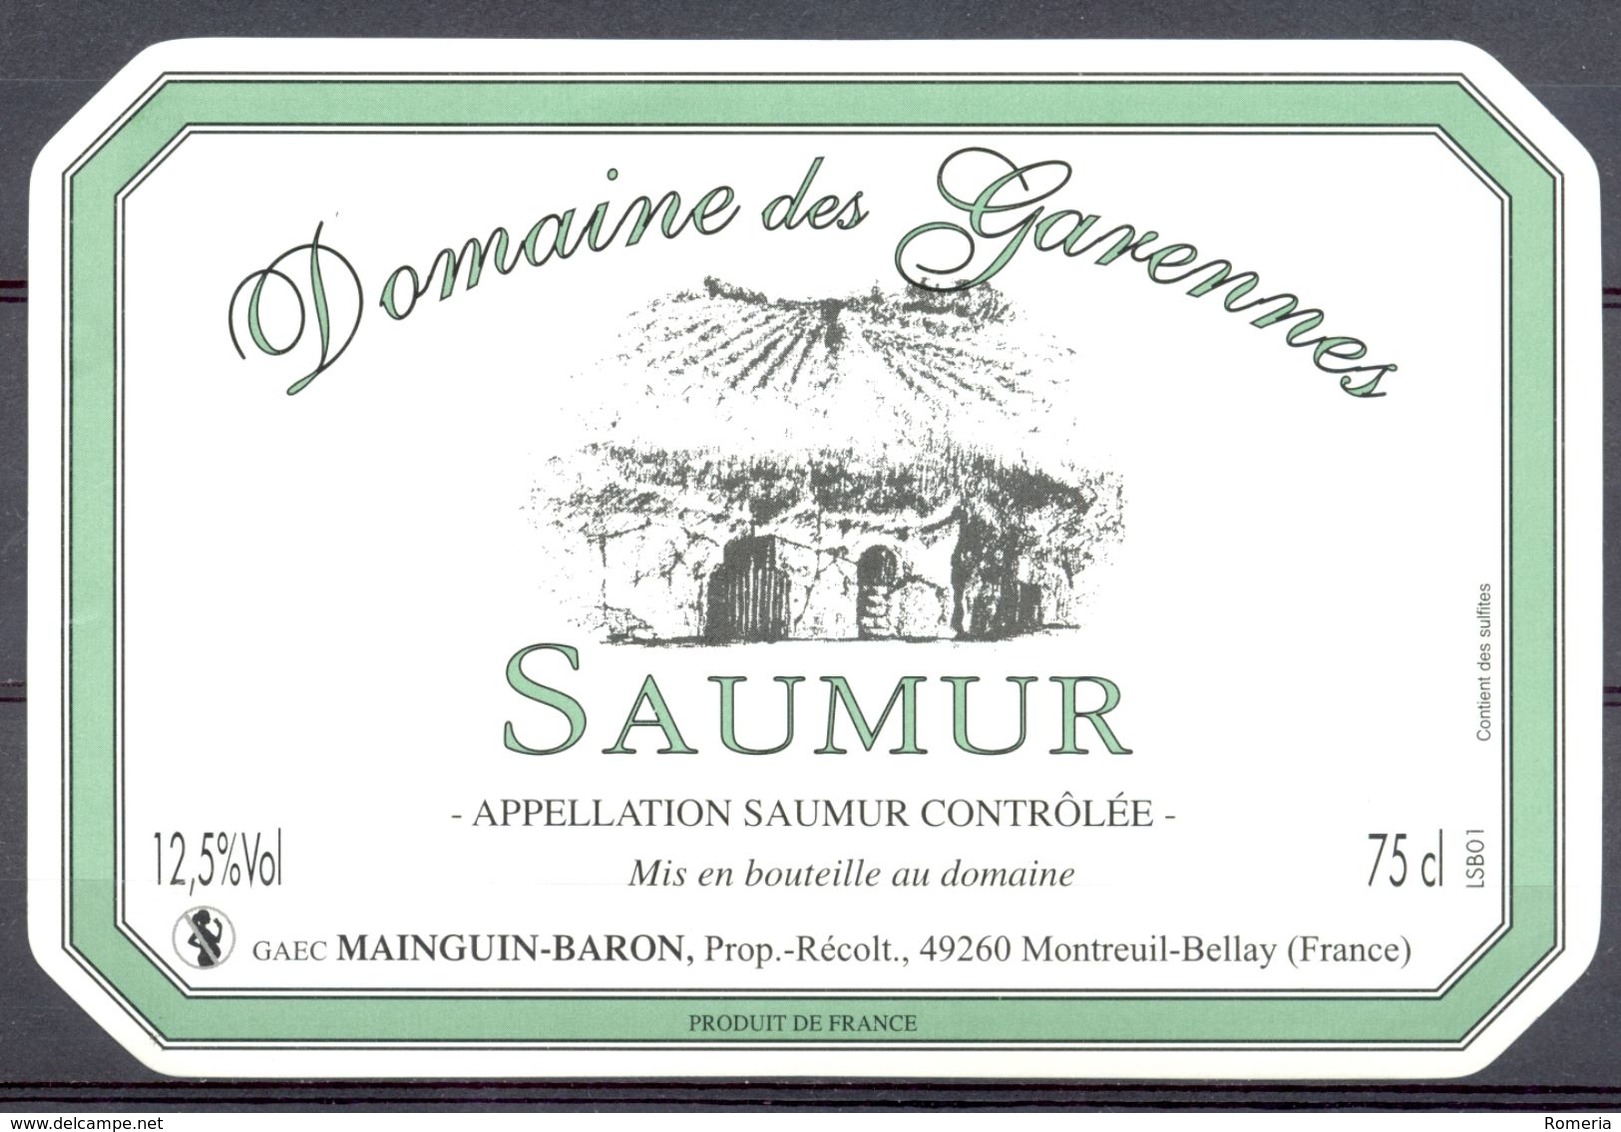 713 - Saumur - Domaine Des Garennes - GAEC Mainguin-Baron - Prop. Récoltant - 49260 Montreuil Bellay - Rouges